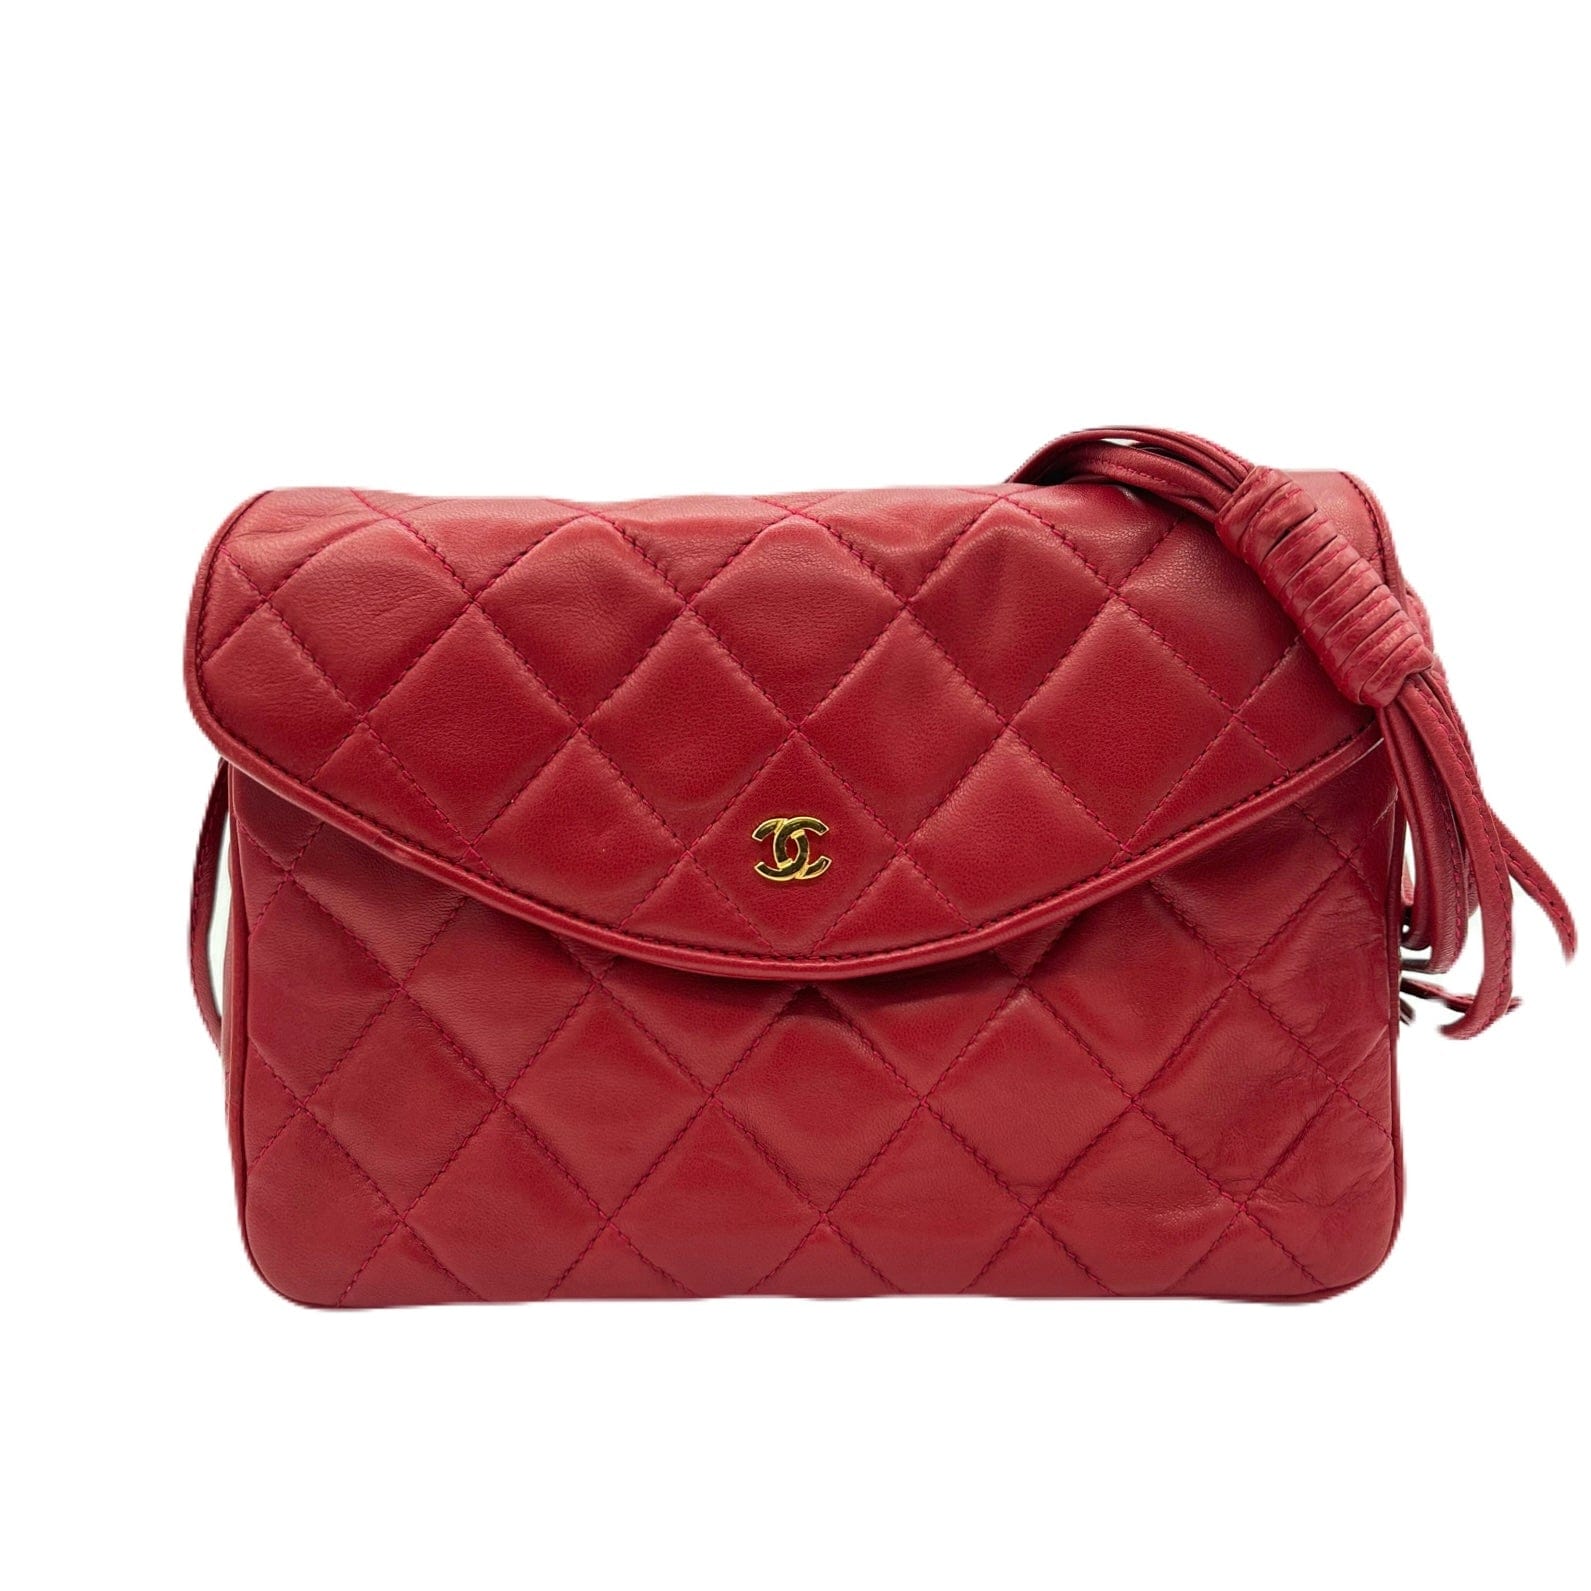 Chanel CHANEL VINTAGE SHOULDER BAG RED LAMB SKIN 90223315